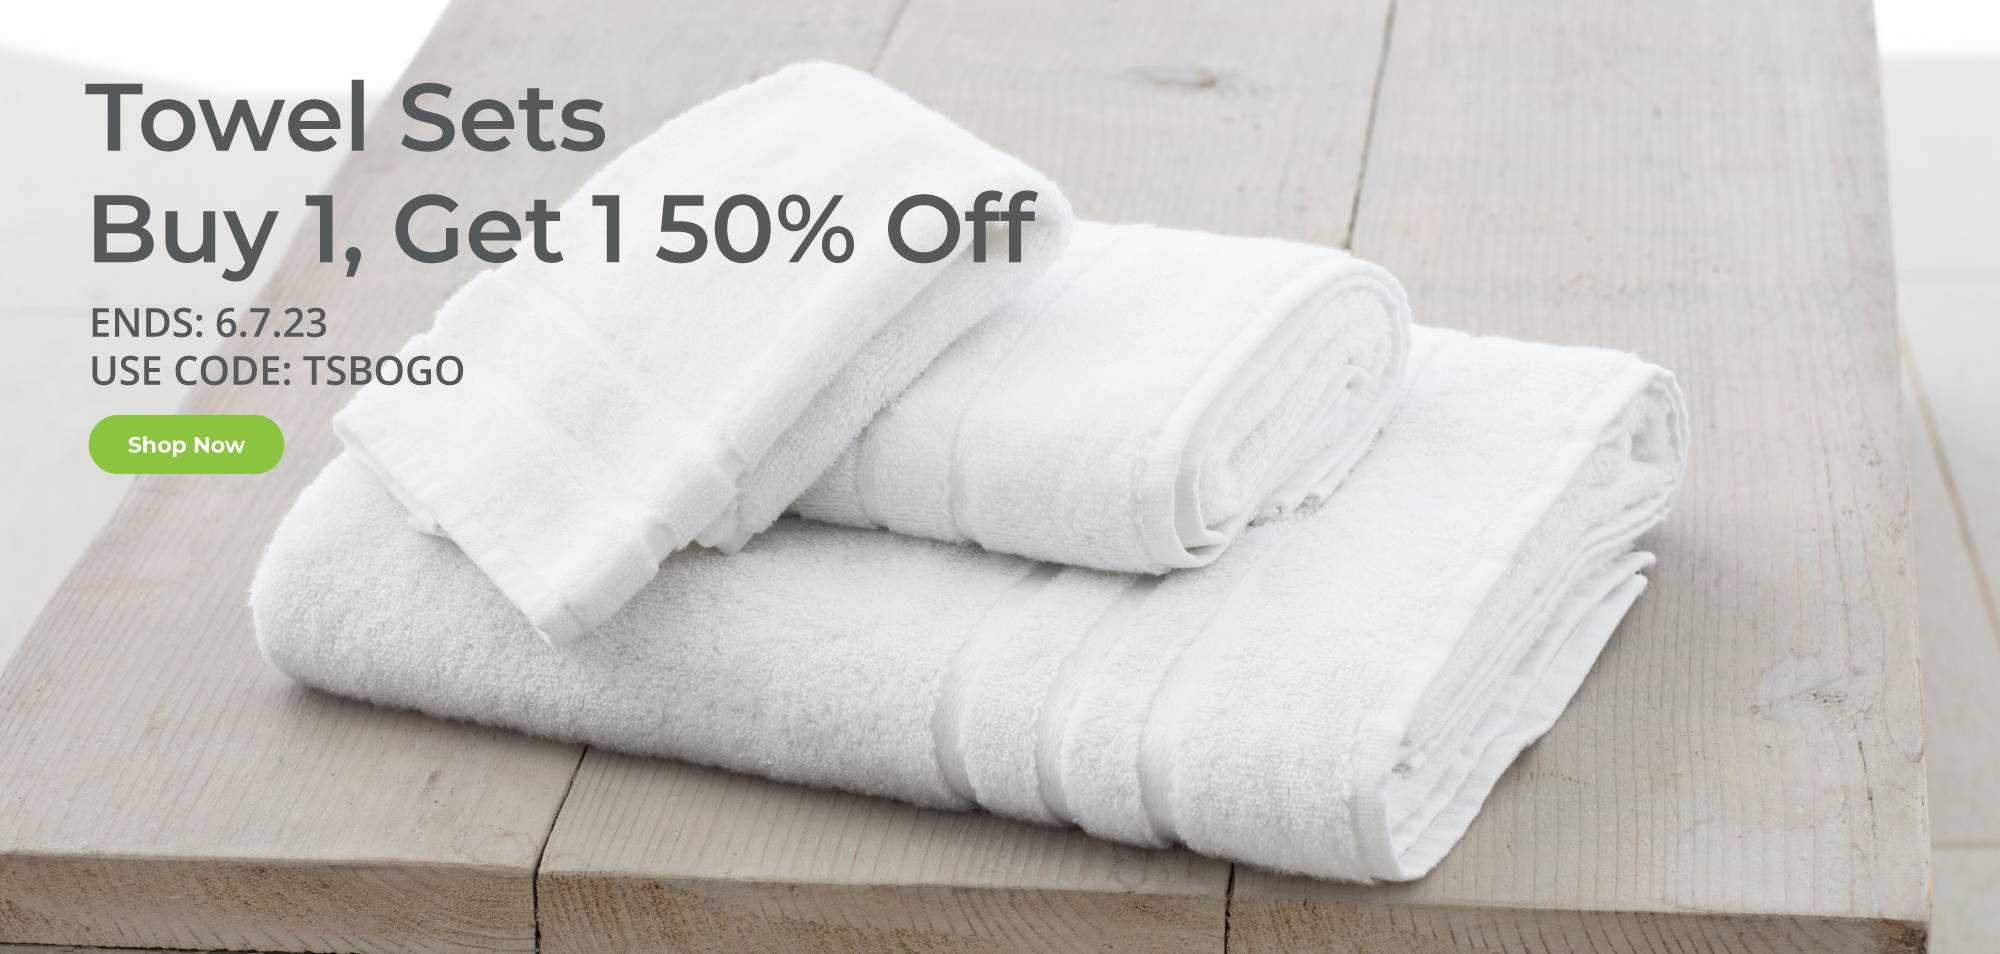 Towel Sets Buy 1, Get 1 50% Off. Ends 6-7-23.  Use Code TSBOGO. Shop Now.